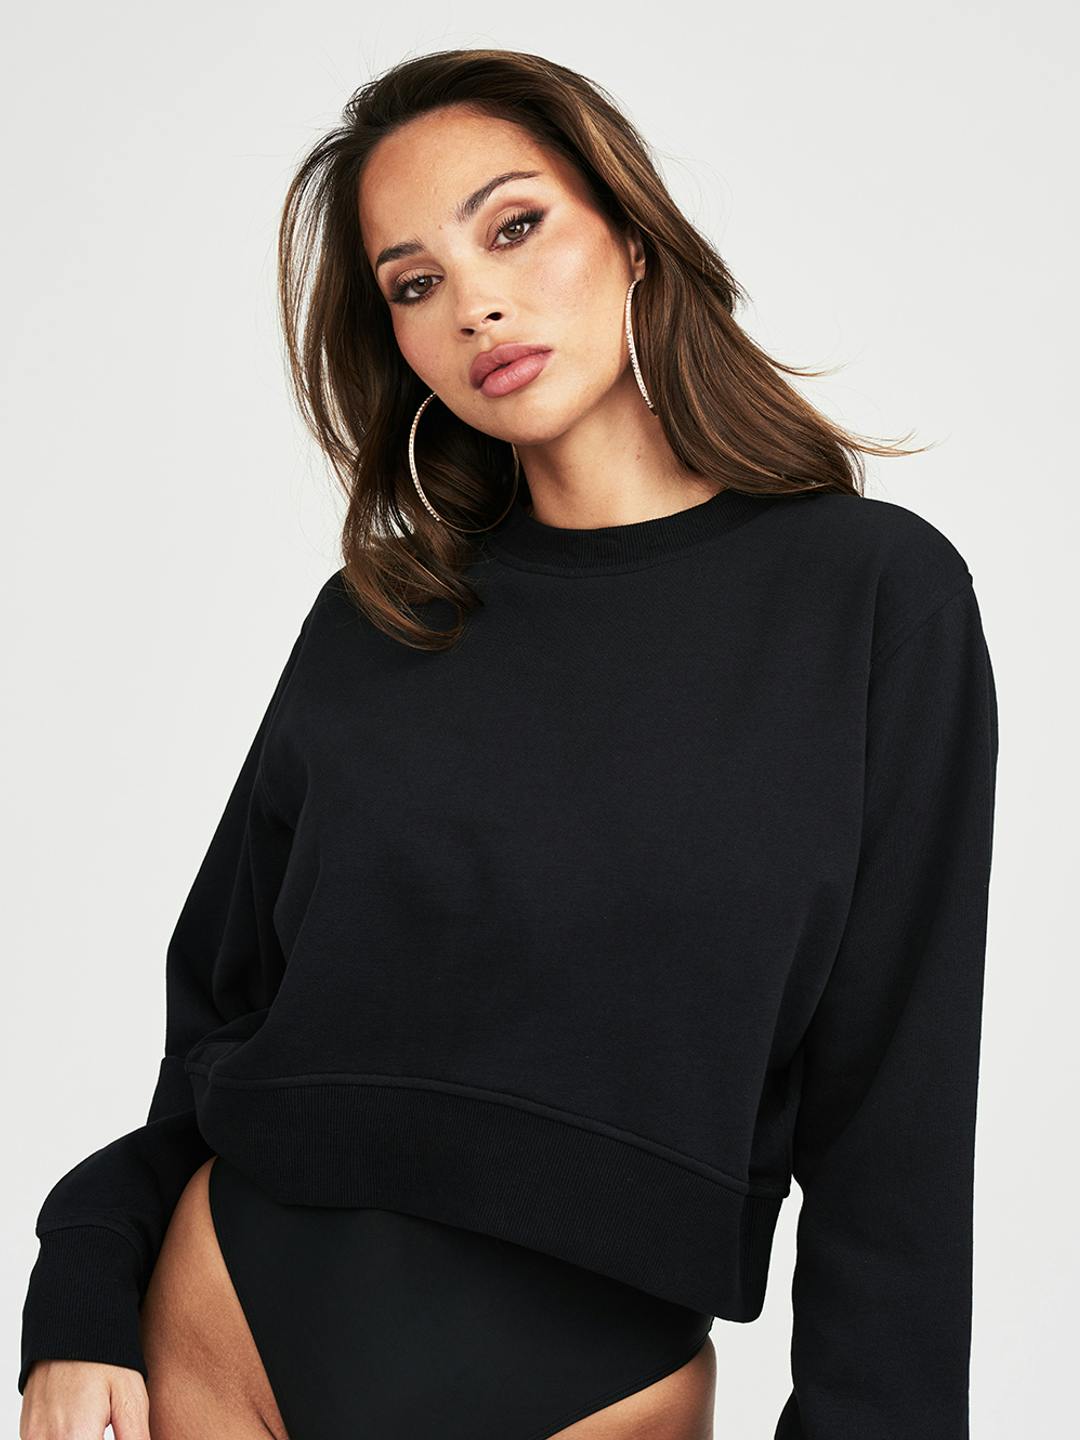 Women's Cropped Sweatshirt Black